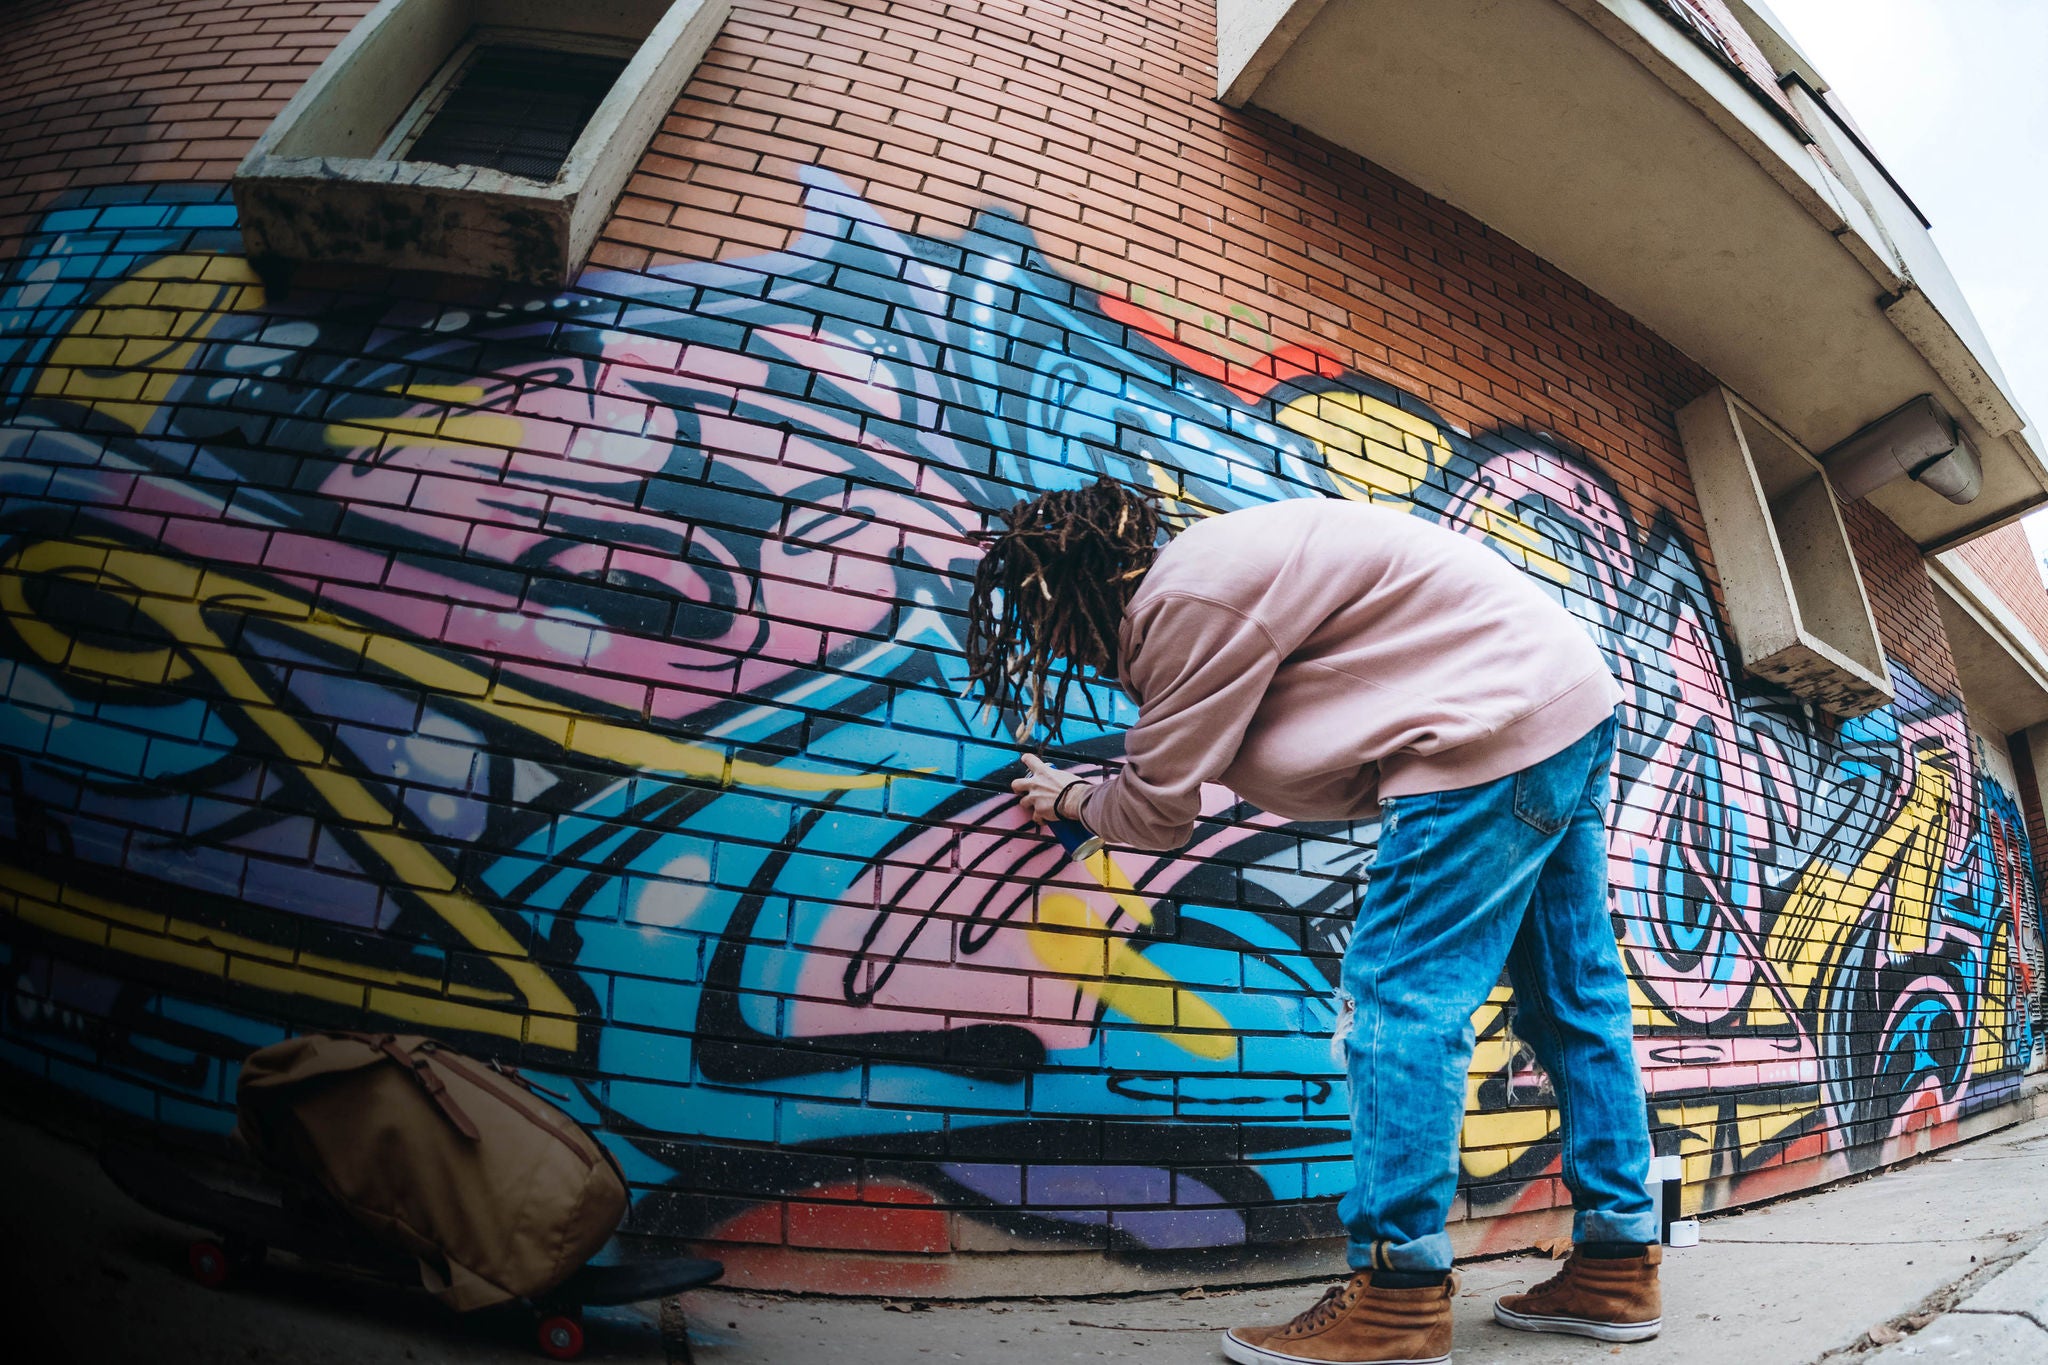 Young caucasian graffiti artist with dreadlocks painting graffiti.